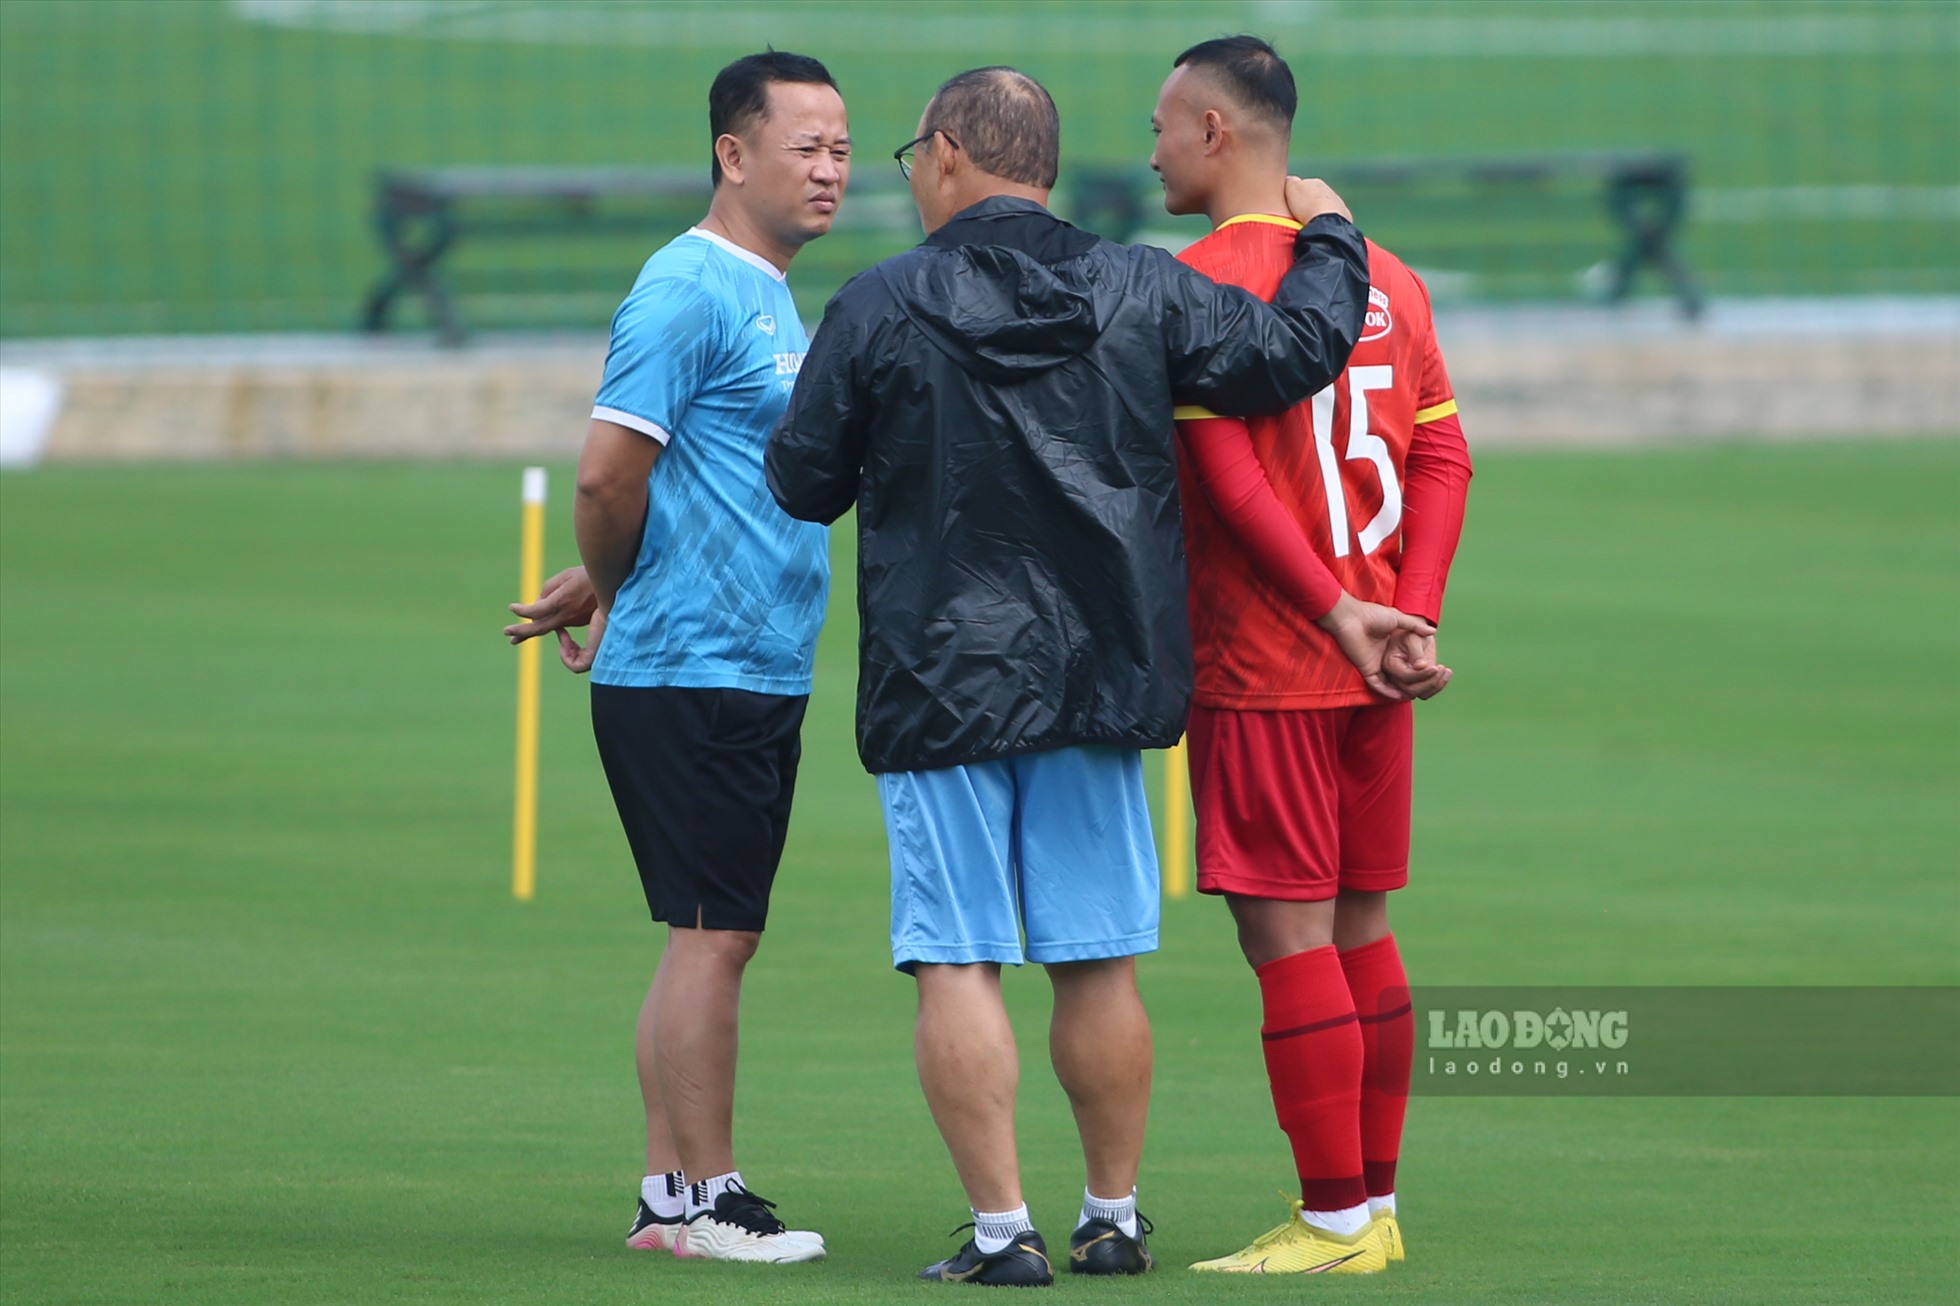 Trọng Hoàng cũng được thầy Park hỏi hạn kỹ lưỡng trước khi bước vào tập luyện. Cầu thủ của Sông Lam Nghệ An mới trở lại sau khi điều trị thoát vị đĩa đệm.